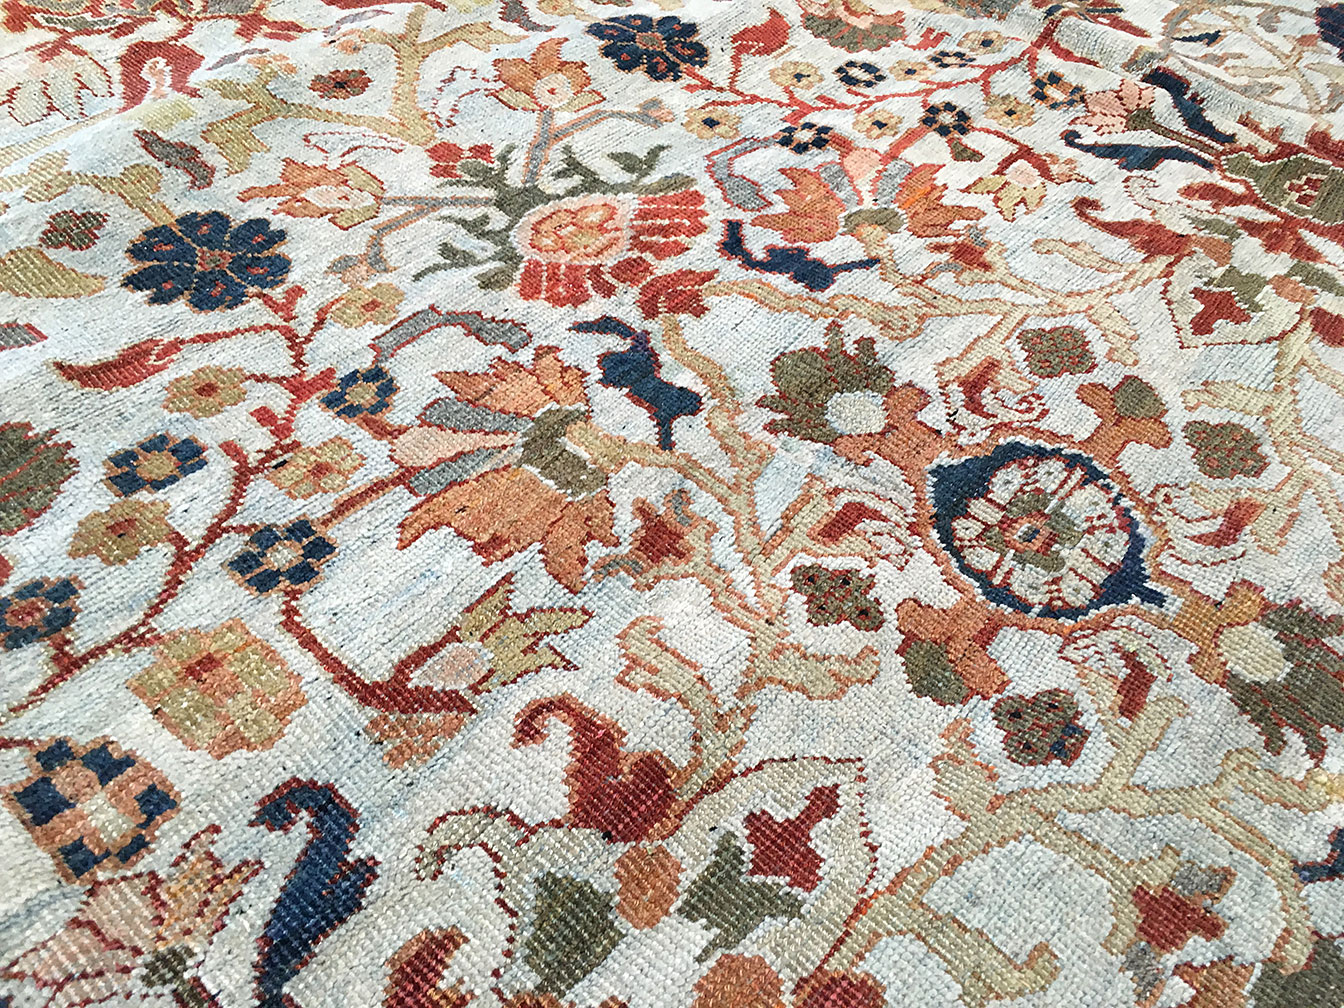 Antique mahal Carpet - # 7561